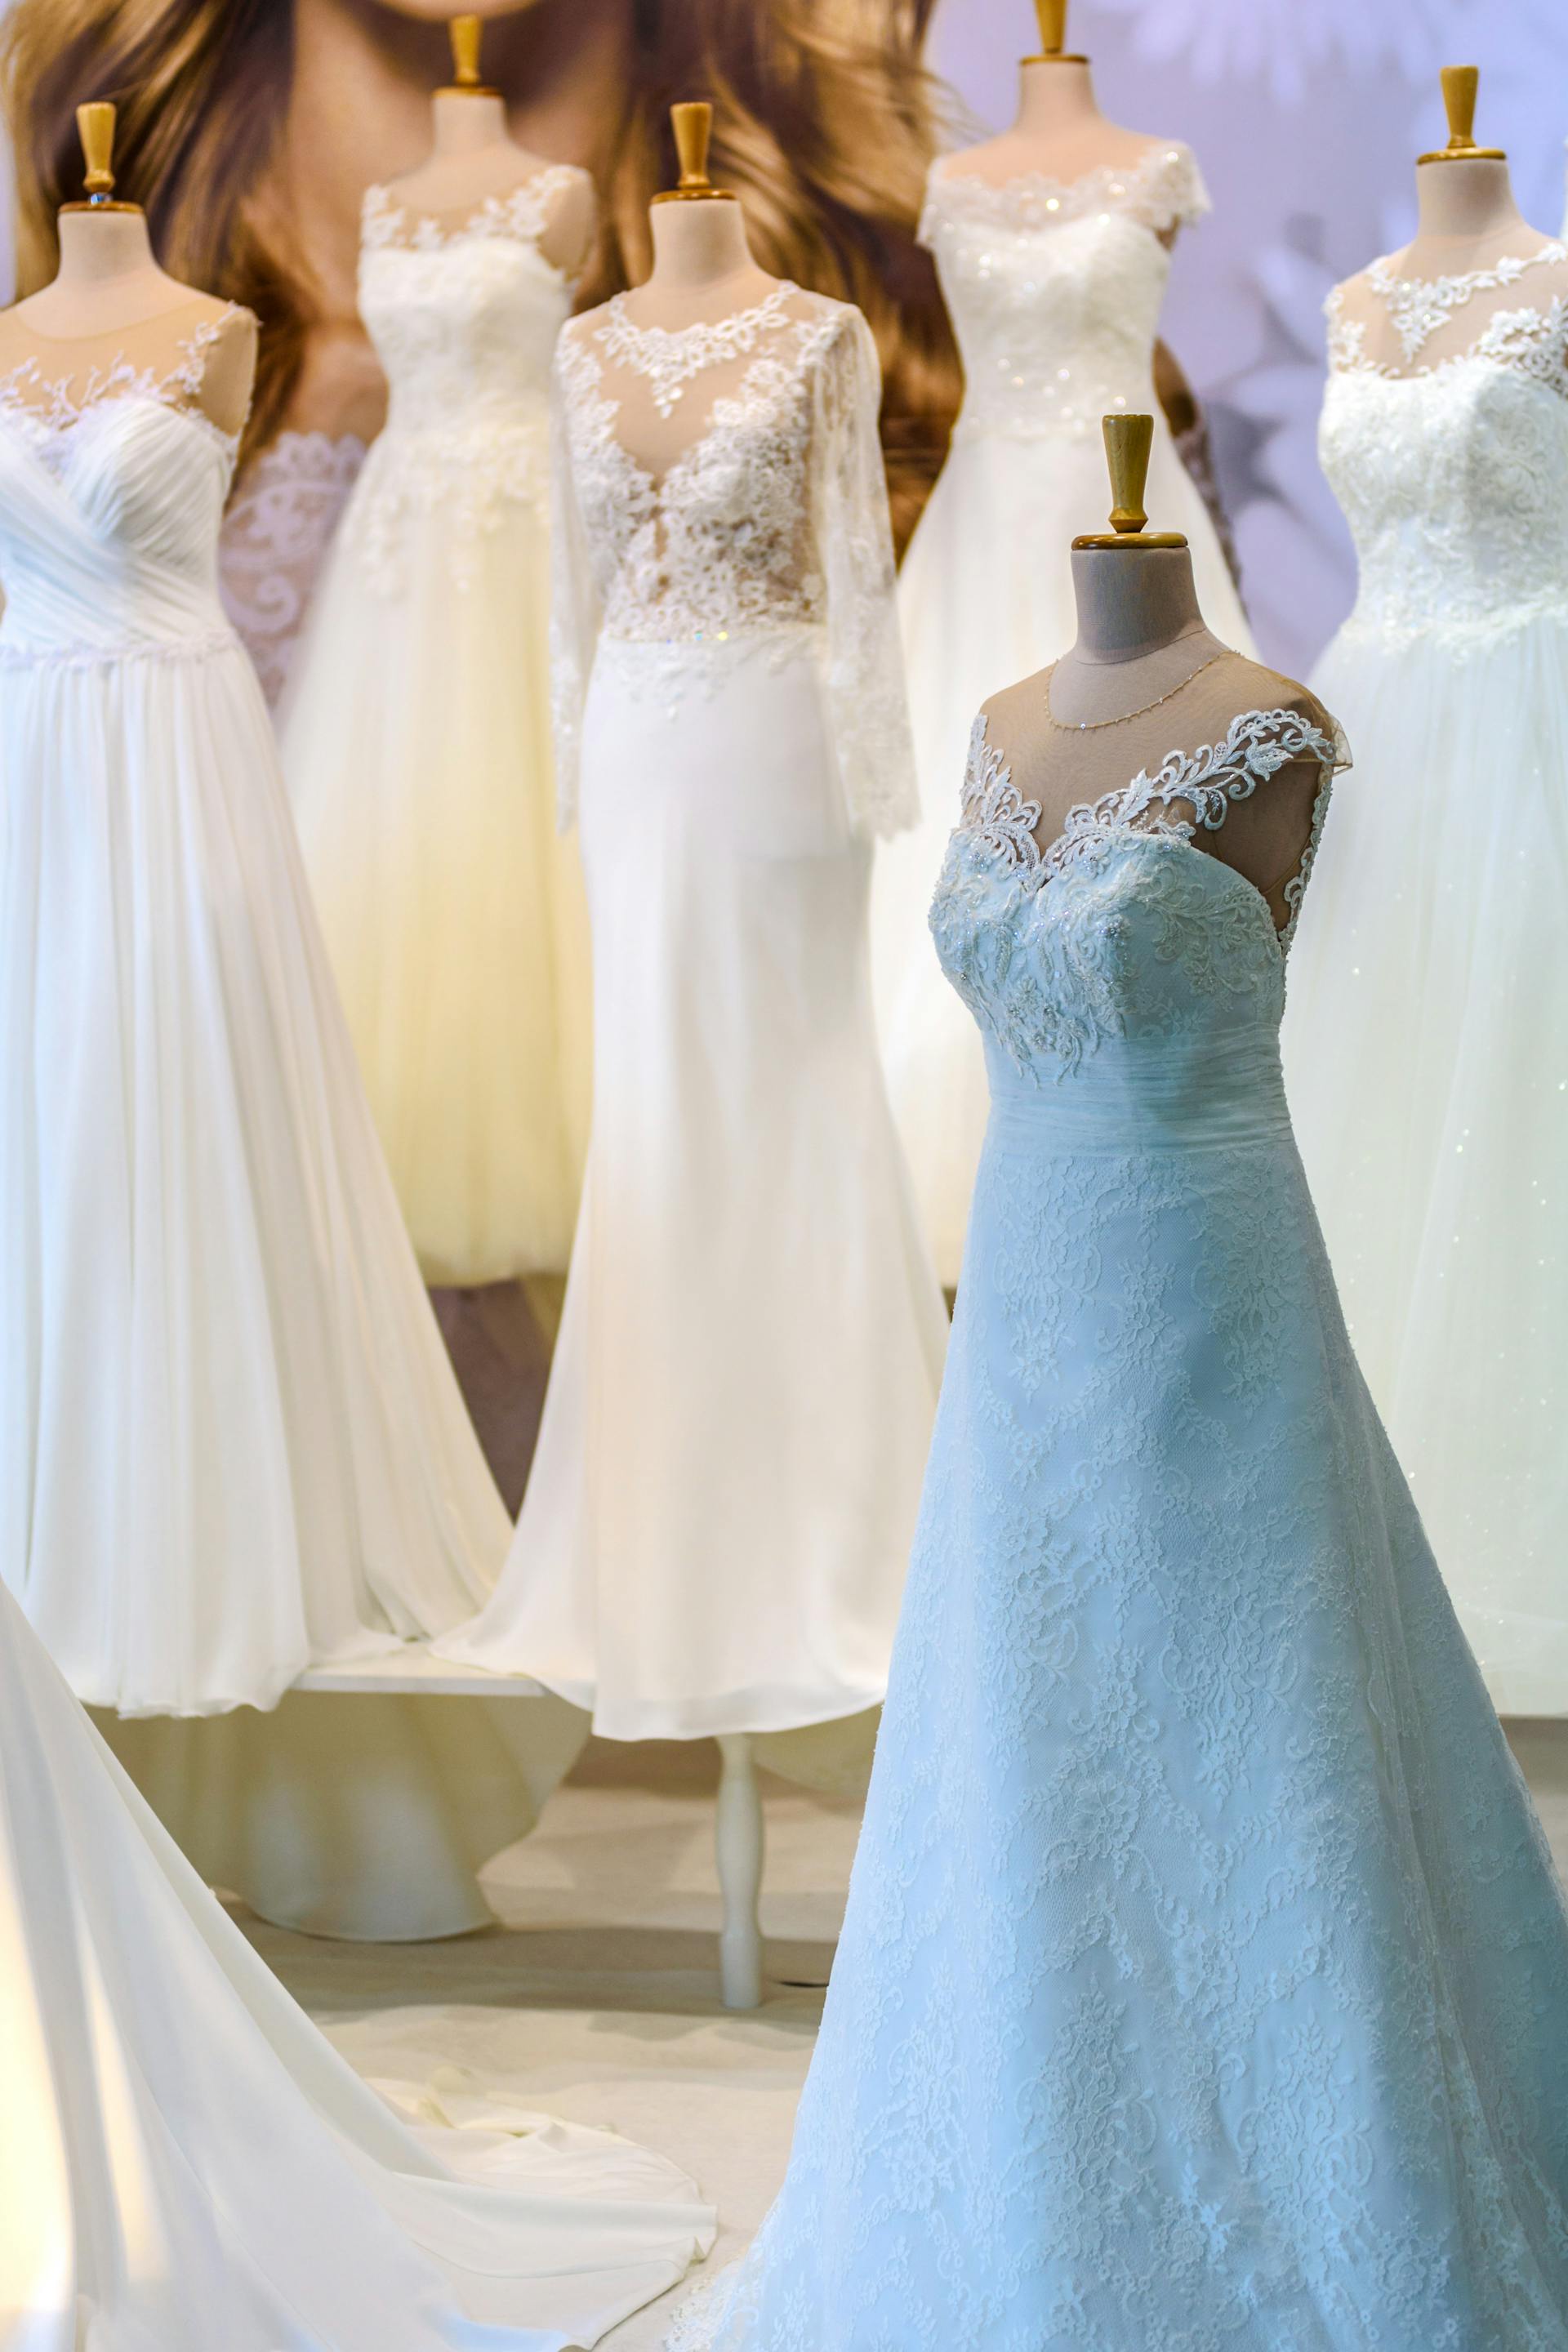 Différentes robes de mariée sur des mannequins | Source : Pexels